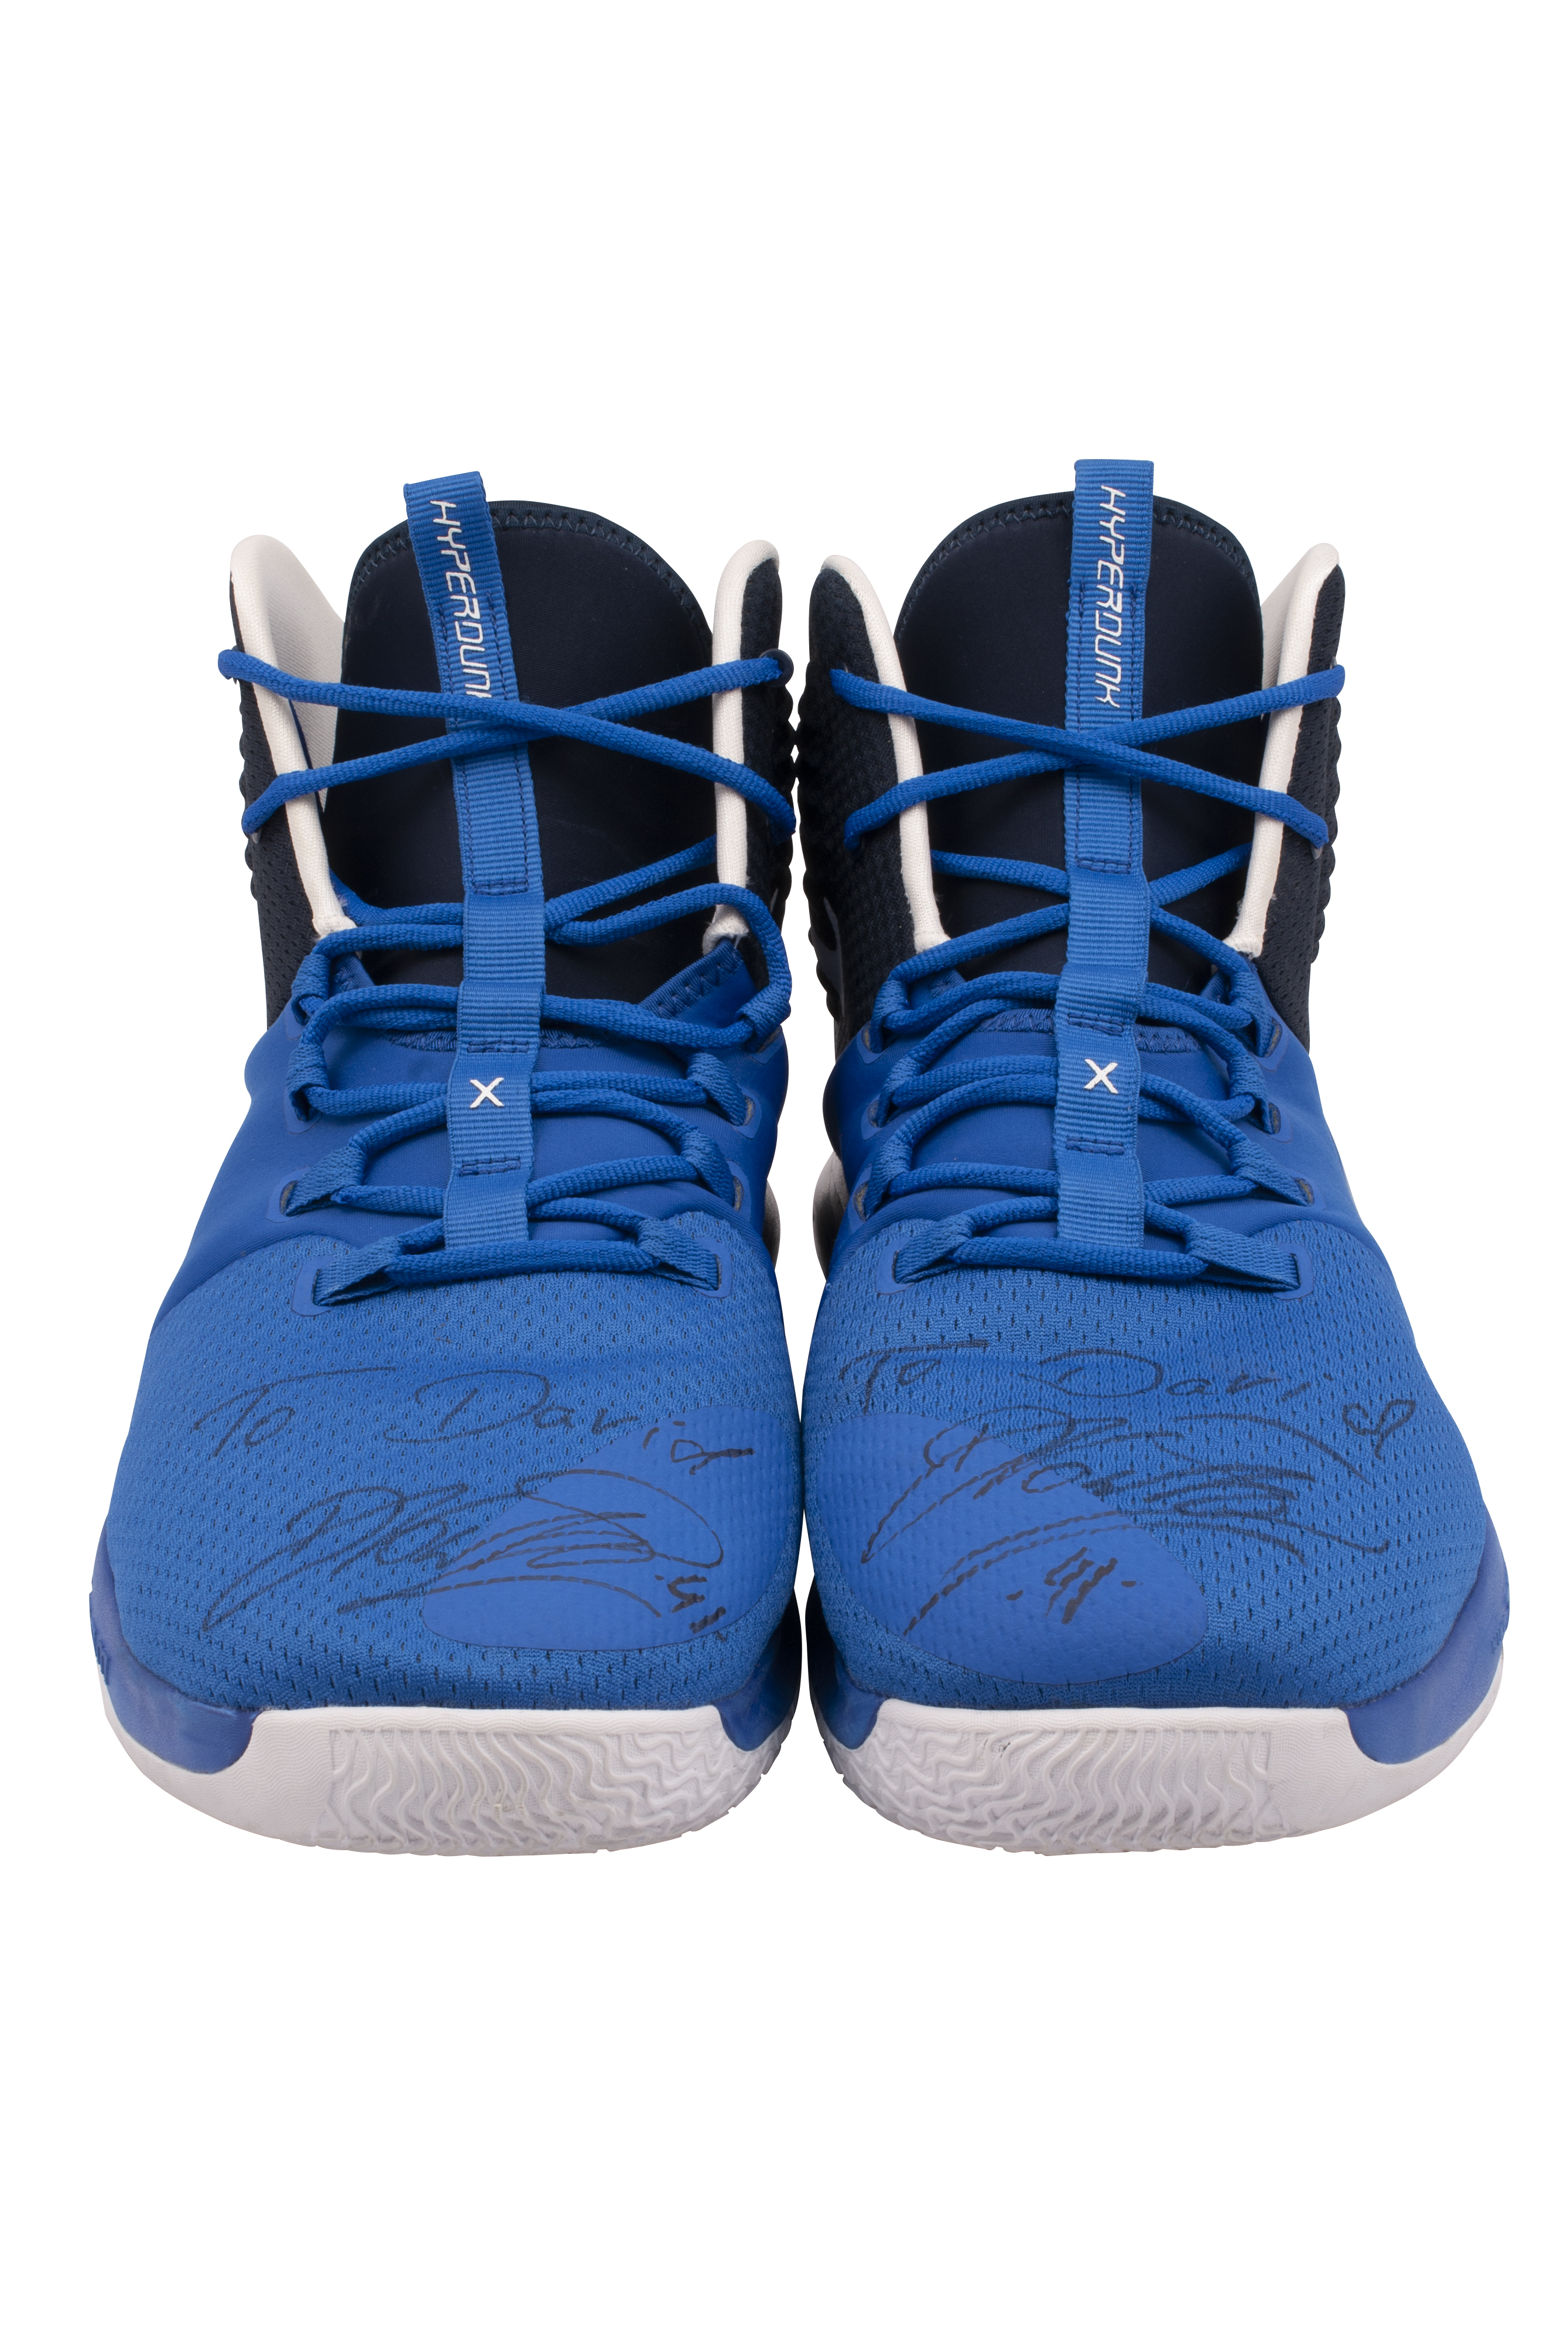 Lot Detail - 2009-10 Dirk Nowitzki Dallas Mavericks Game-Used &  Dual-Autographed Shoes